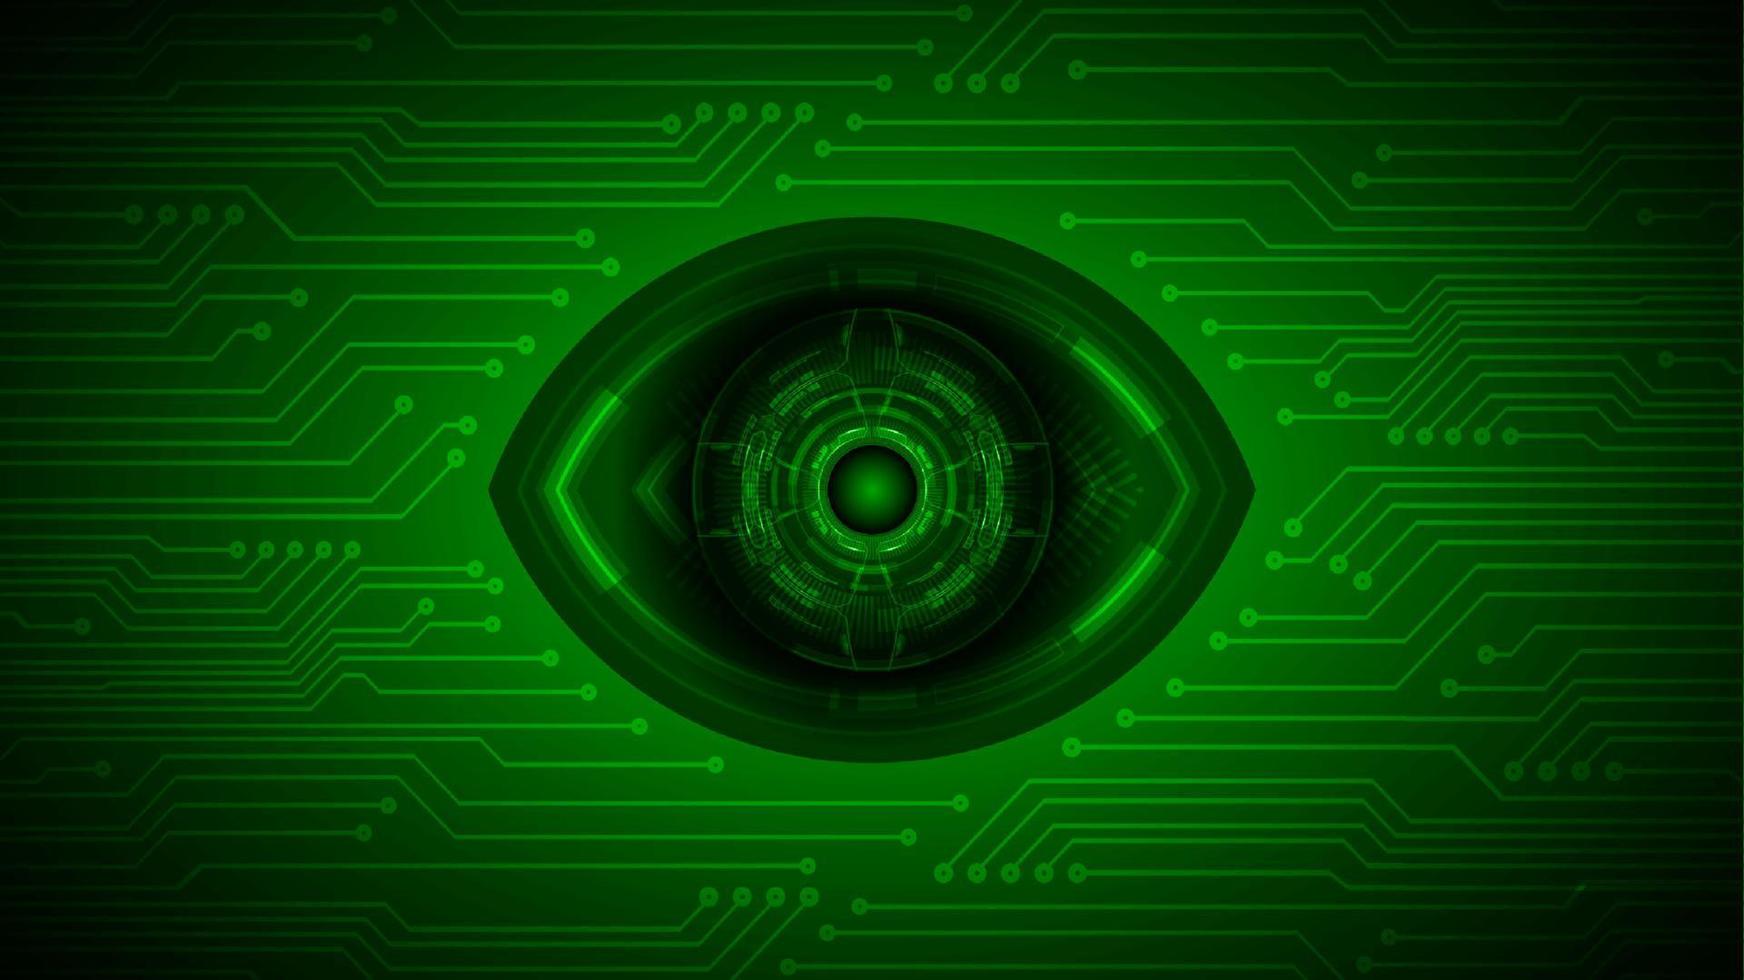 fondo de tecnología de ciberseguridad con ojo vector